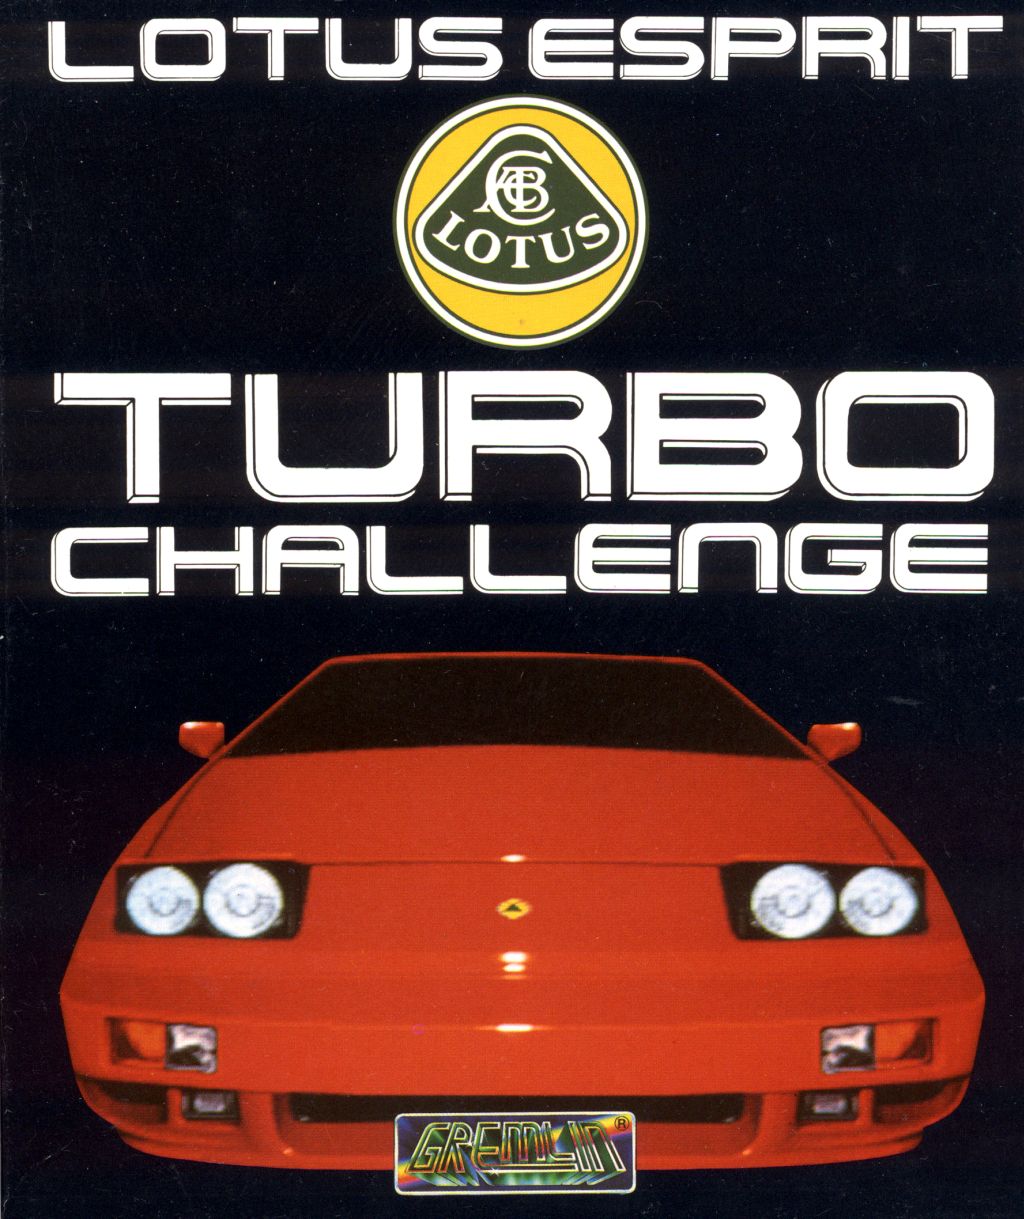 Lotus Esprit Turbo Challenge Фото